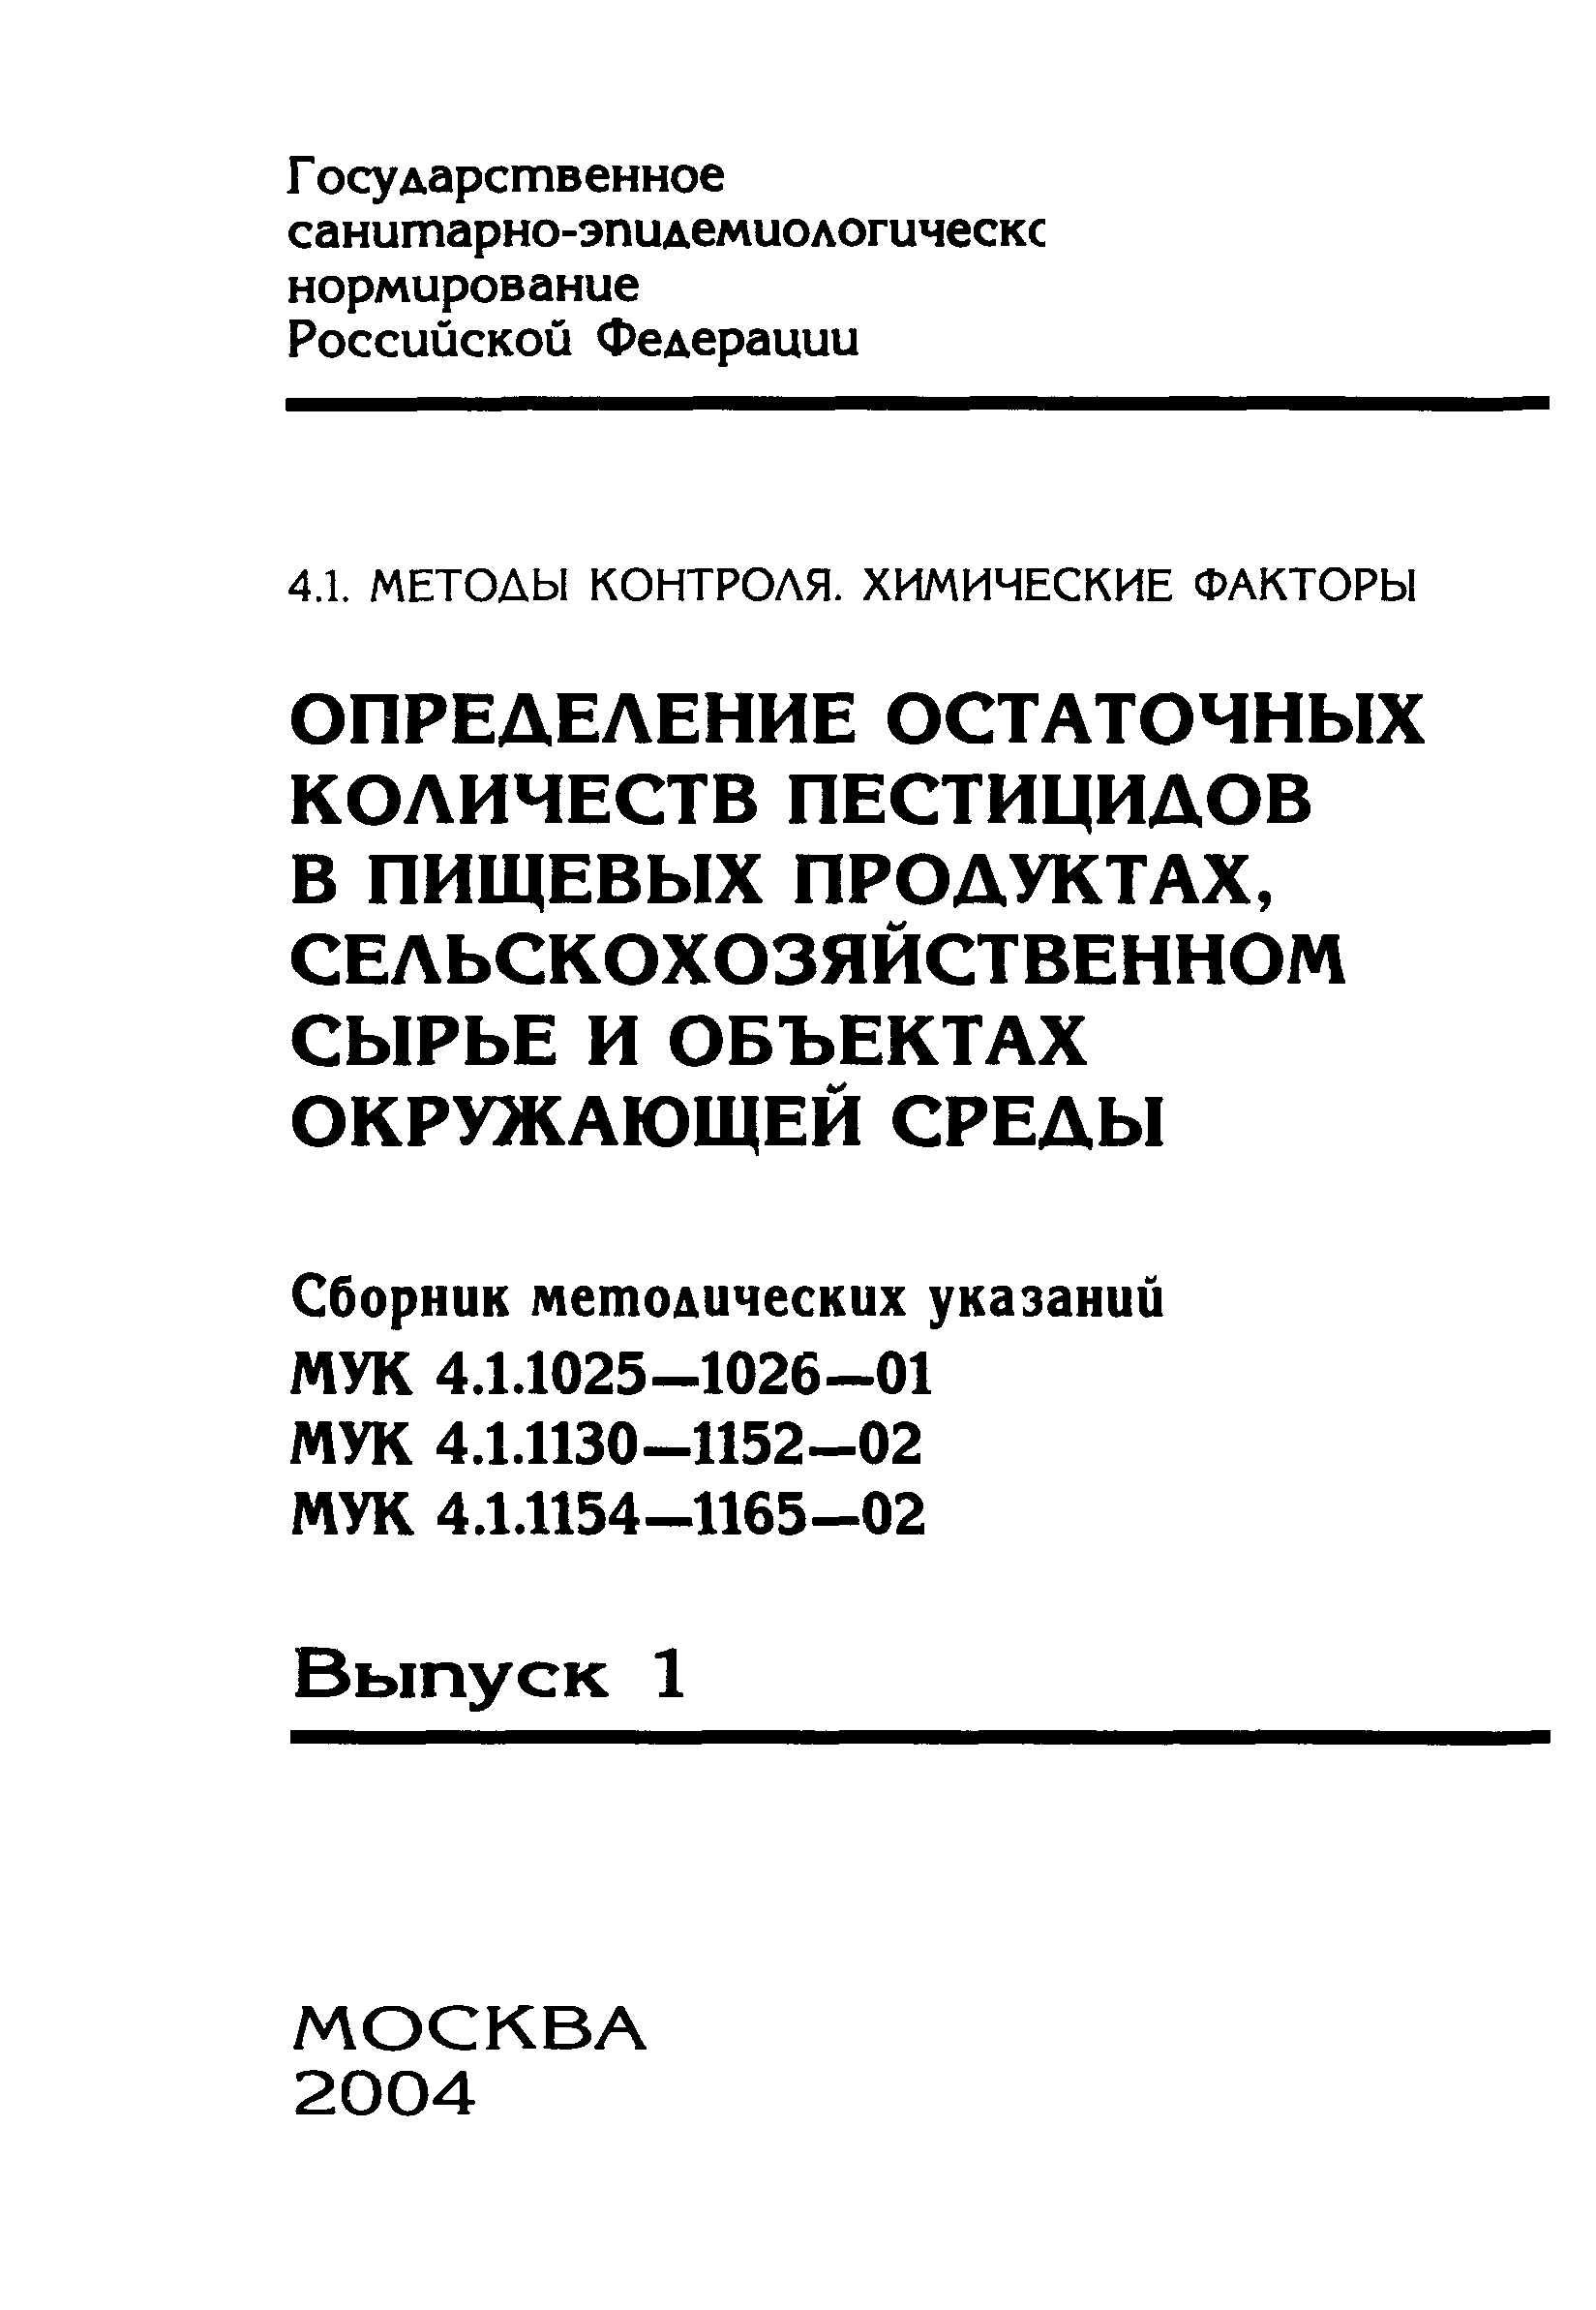 МУК 4.1.1158-02